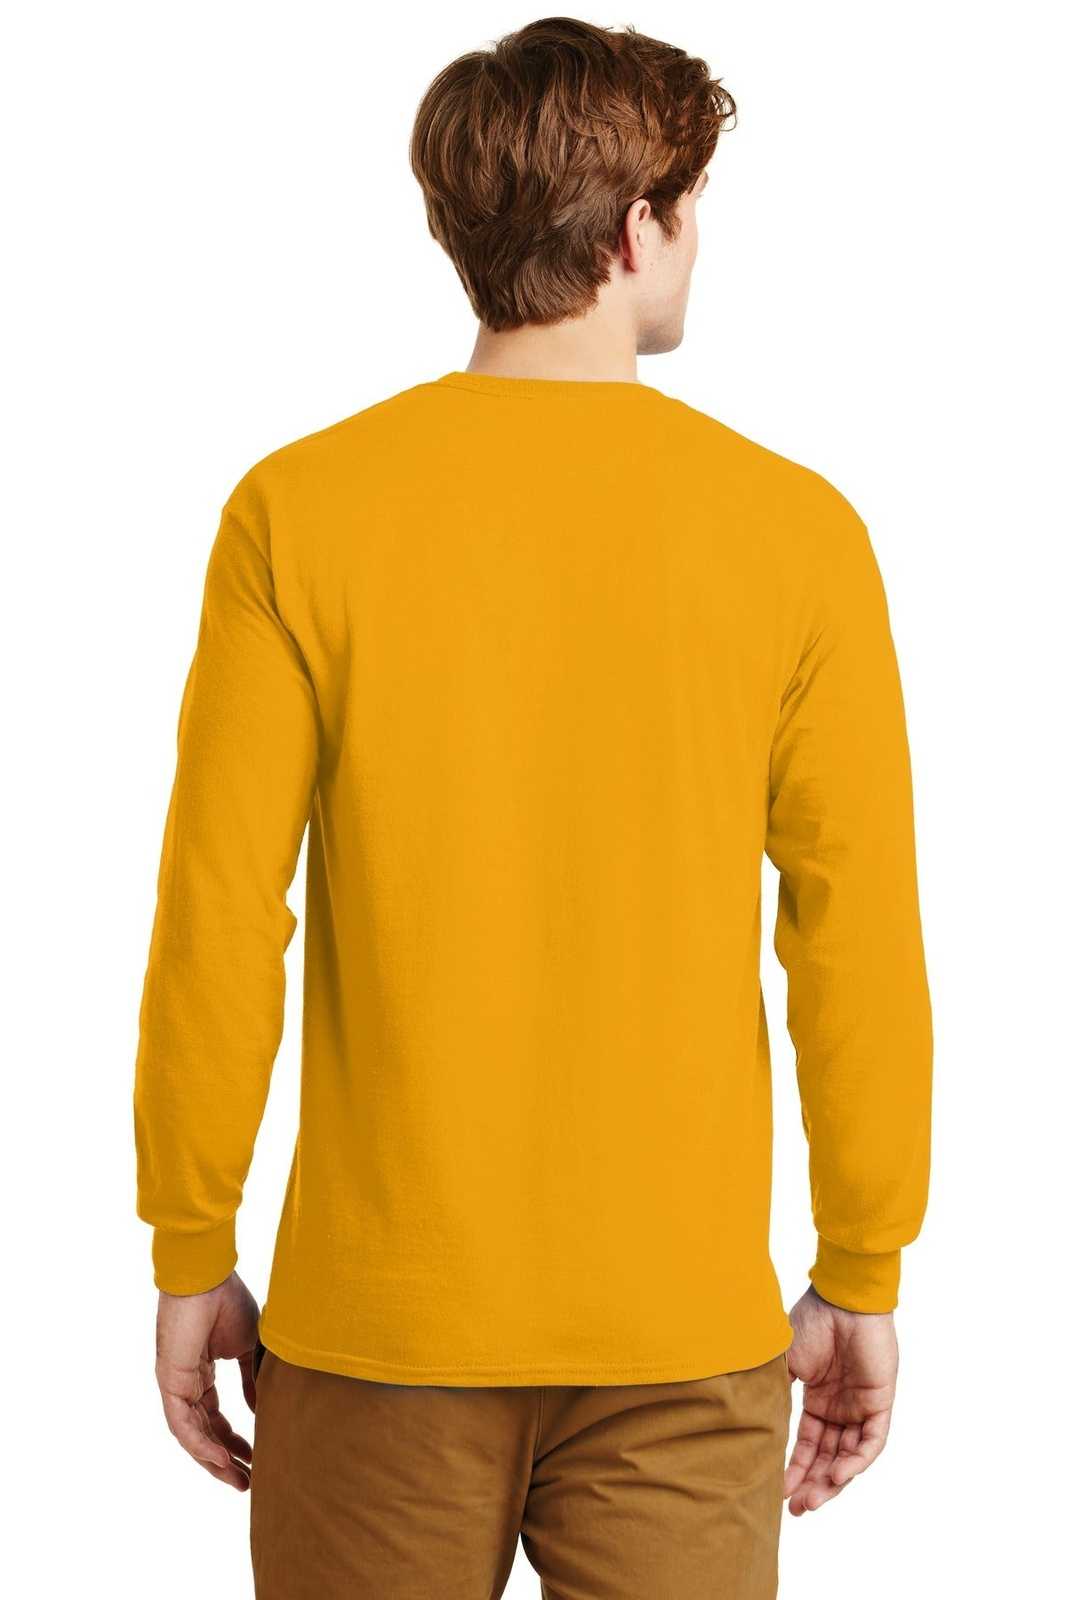 Gildan G2400 Ultra Cotton 100% Cotton Long Sleeve T-Shirt - Gold - HIT a Double